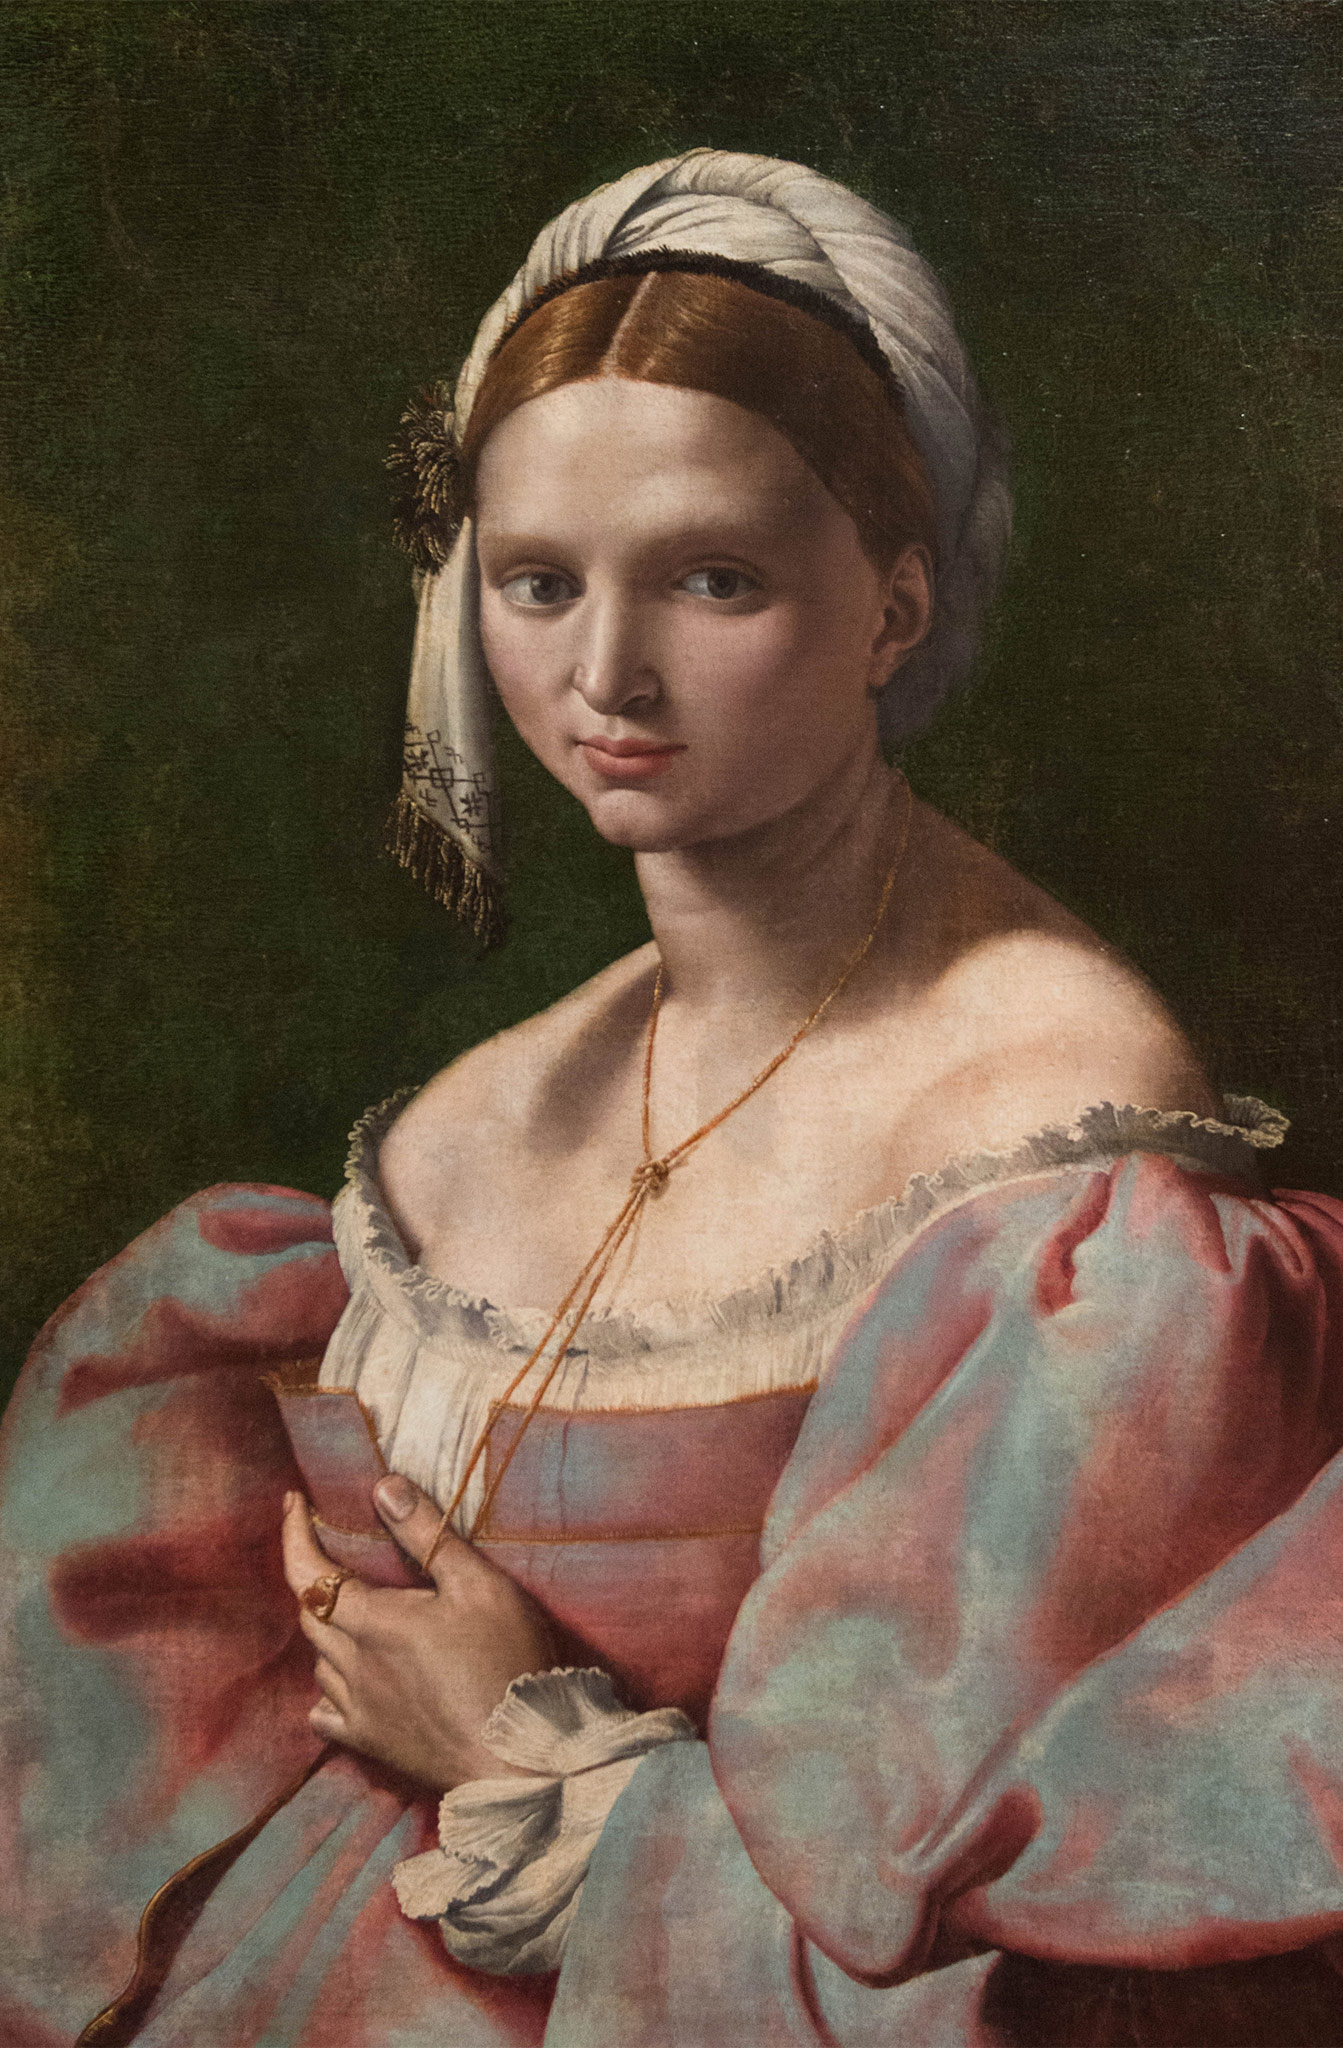 Portrait de jeune femme - Giuliano Bugiardini (1475-1554) Florence 1516-25 - huile sur toile - Musée Calouste Gulbenkian - Lisbonne